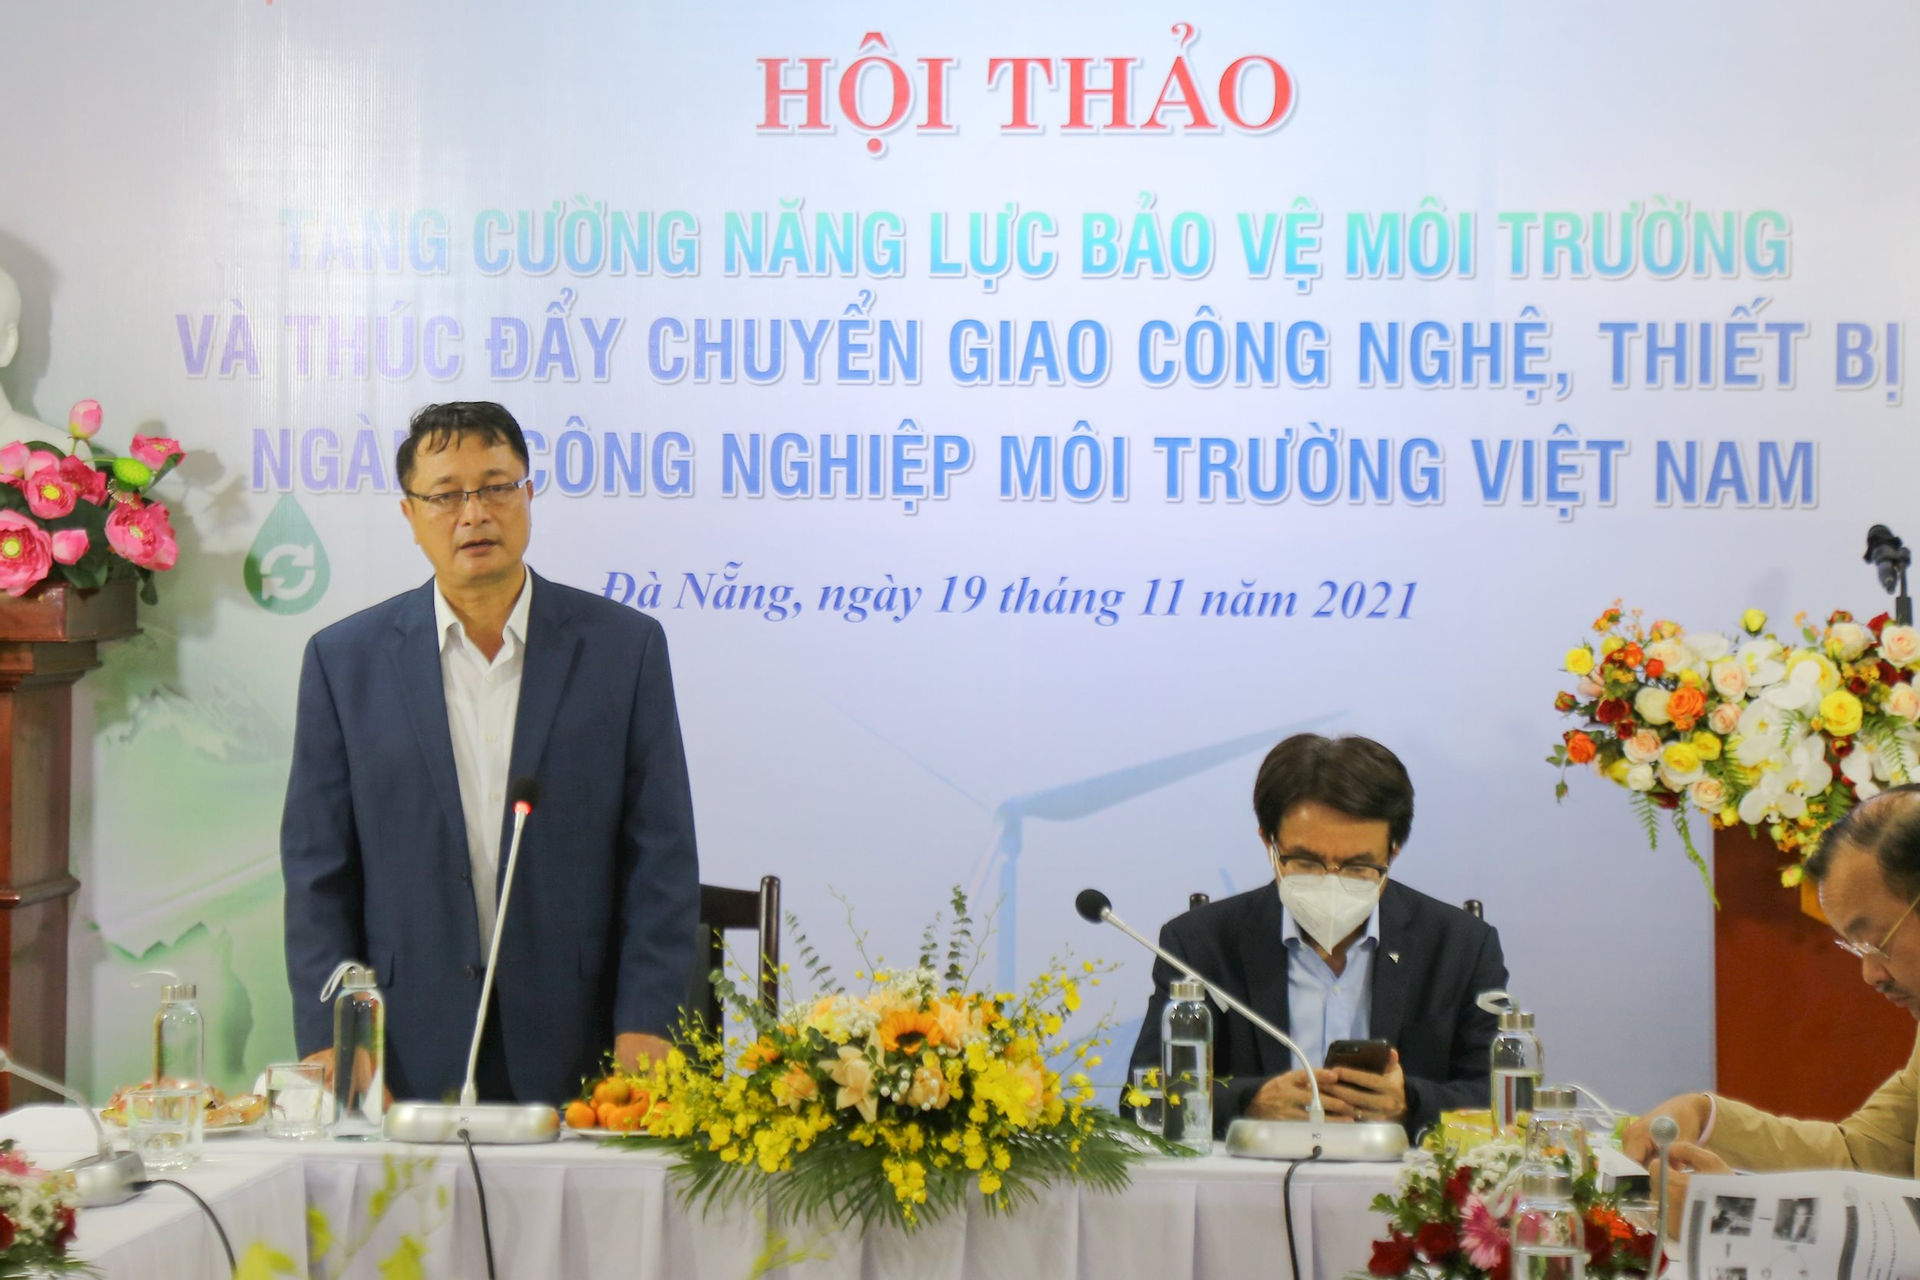 Thúc đẩy chuyển giao công nghệ, thiết bị ngành công nghiệp môi trường Việt Nam - Ảnh 1.